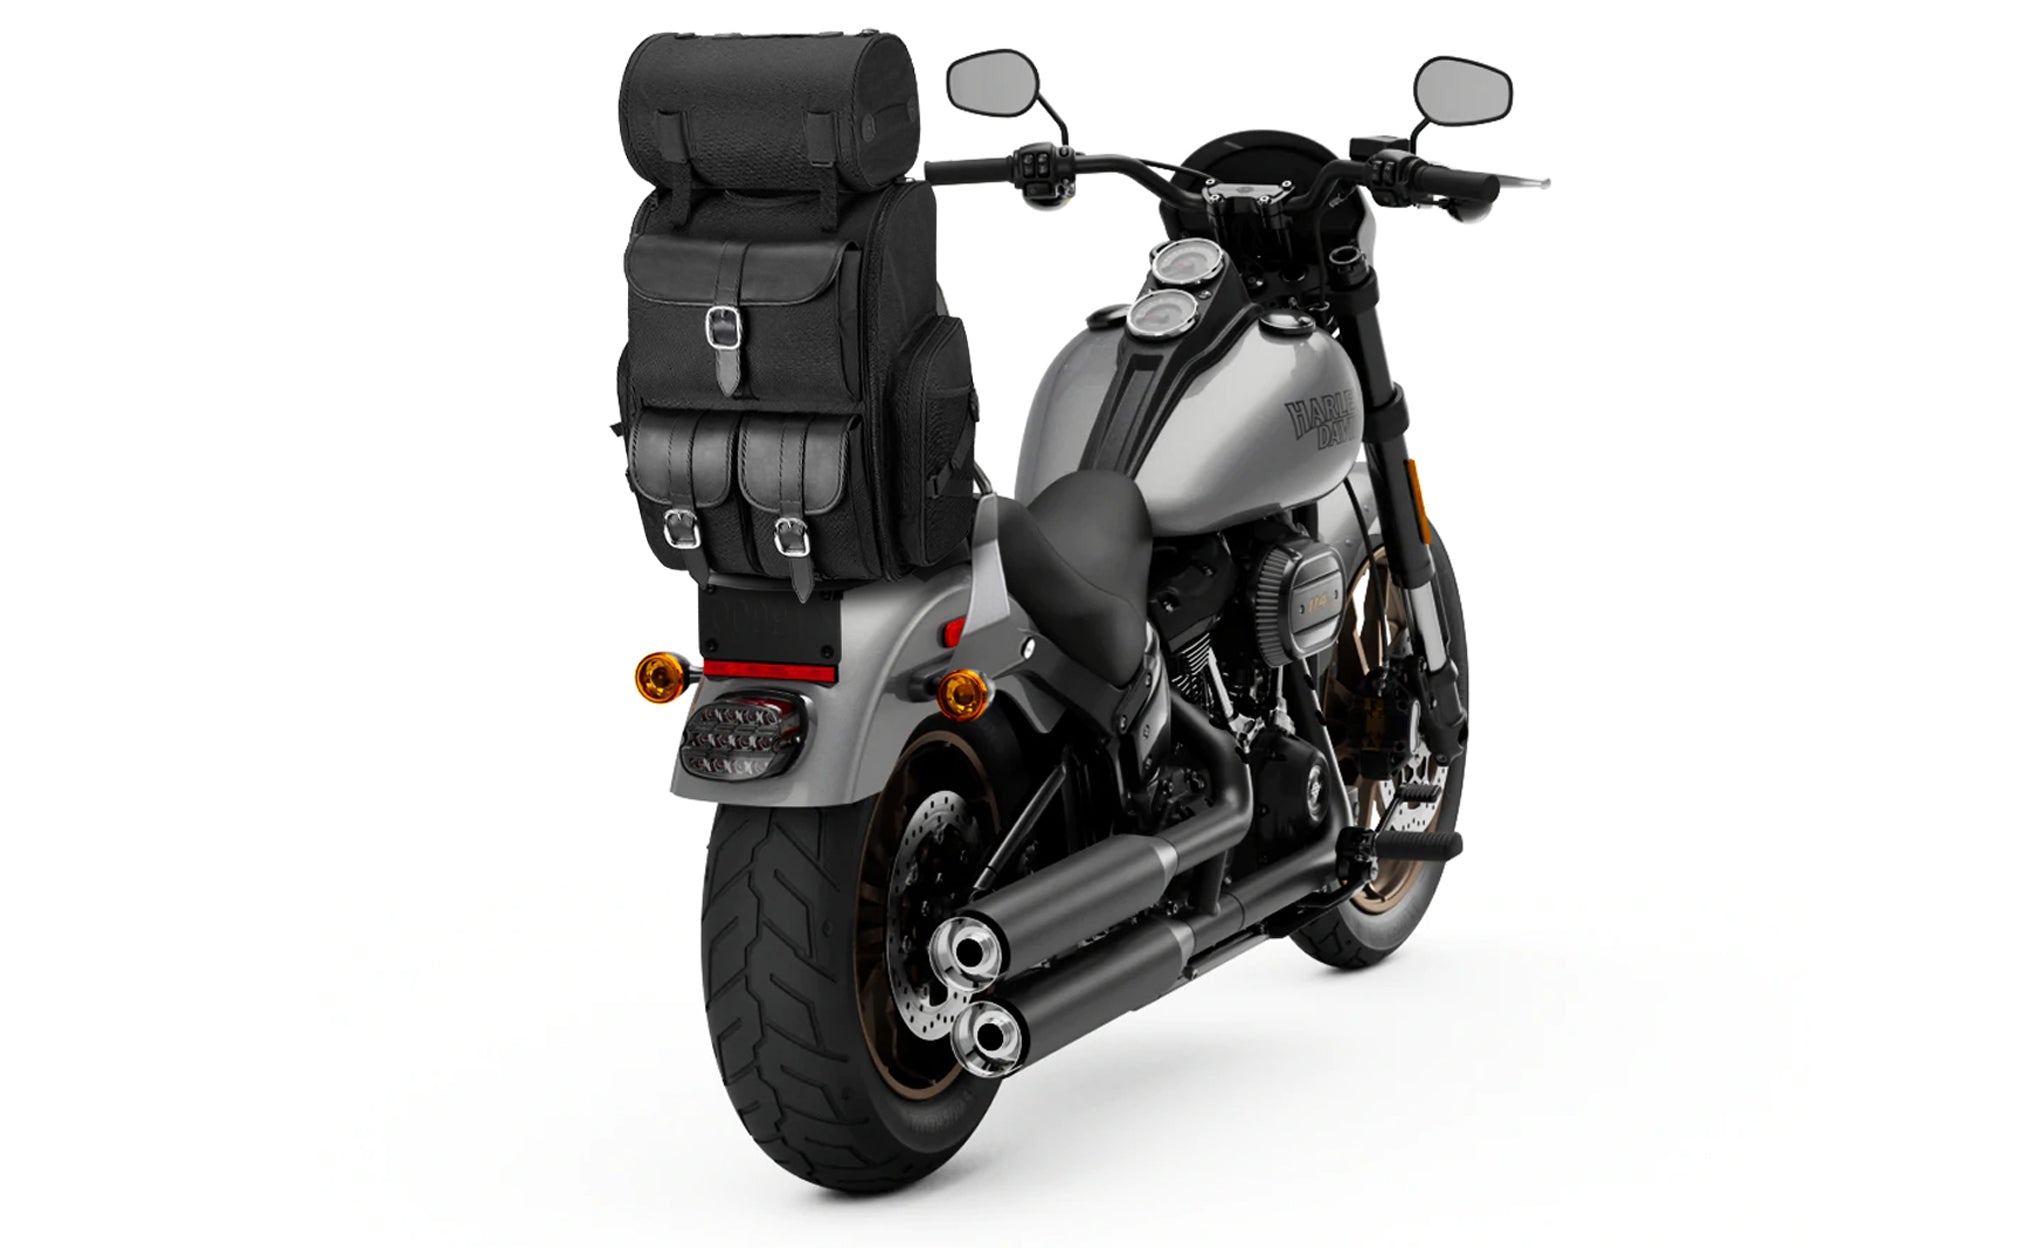 Viking Highway Extra Large Plain Suzuki Motorcycle Tail Bag Bag on Bike View @expand